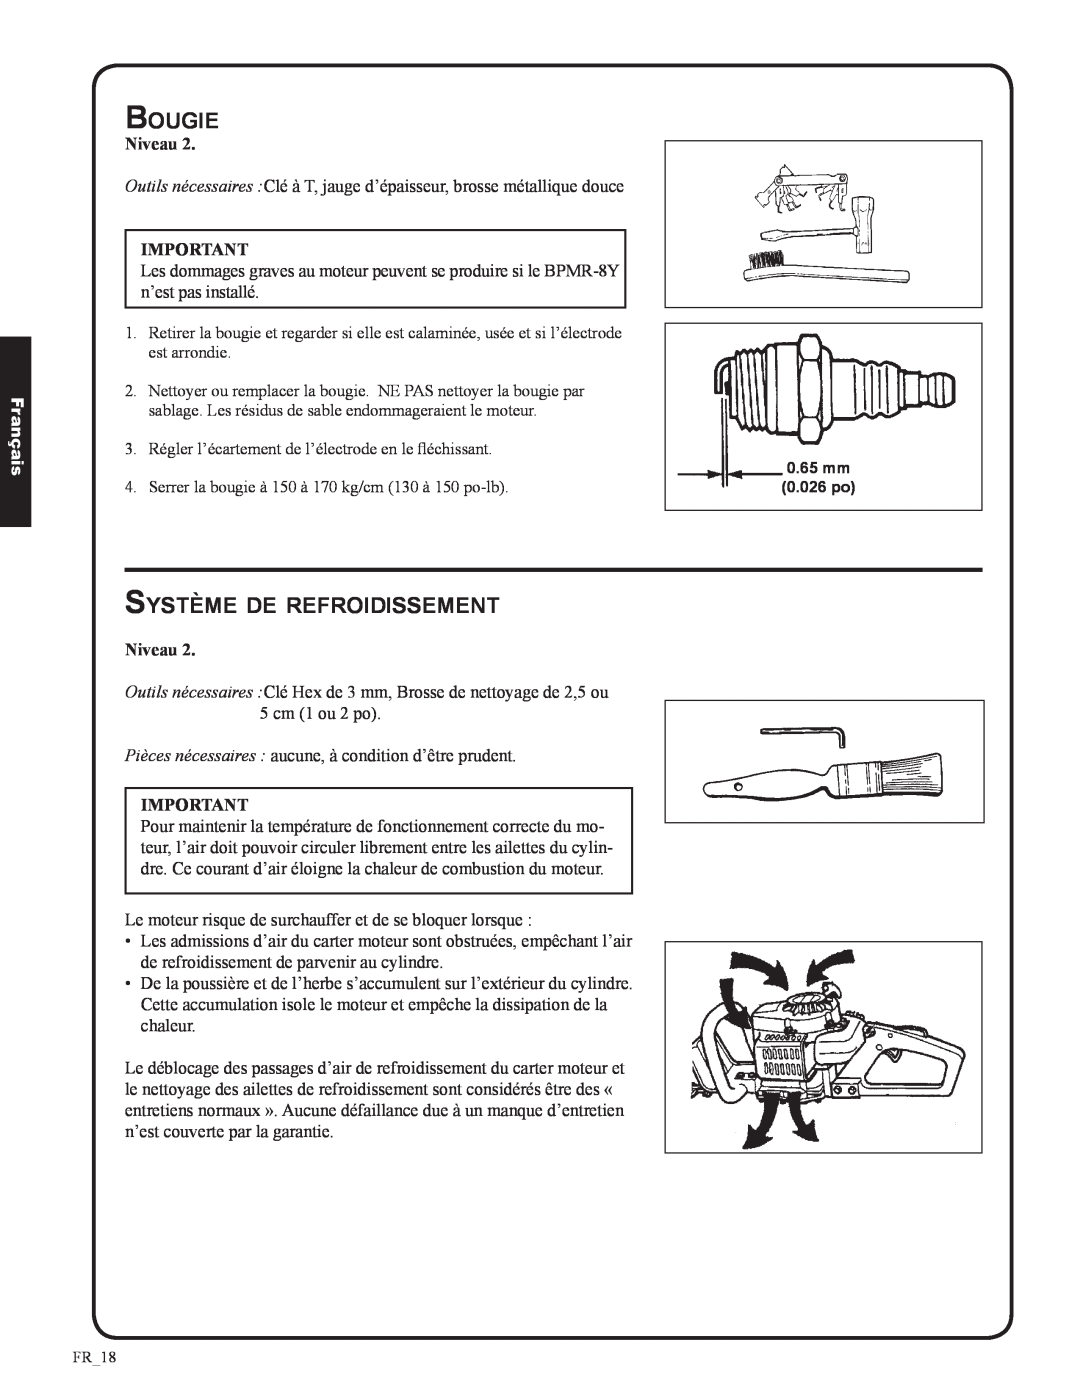 Shindaiwa DH212, 82053 manual Bougie, Système de refroidissement, Français, 0.026 po 